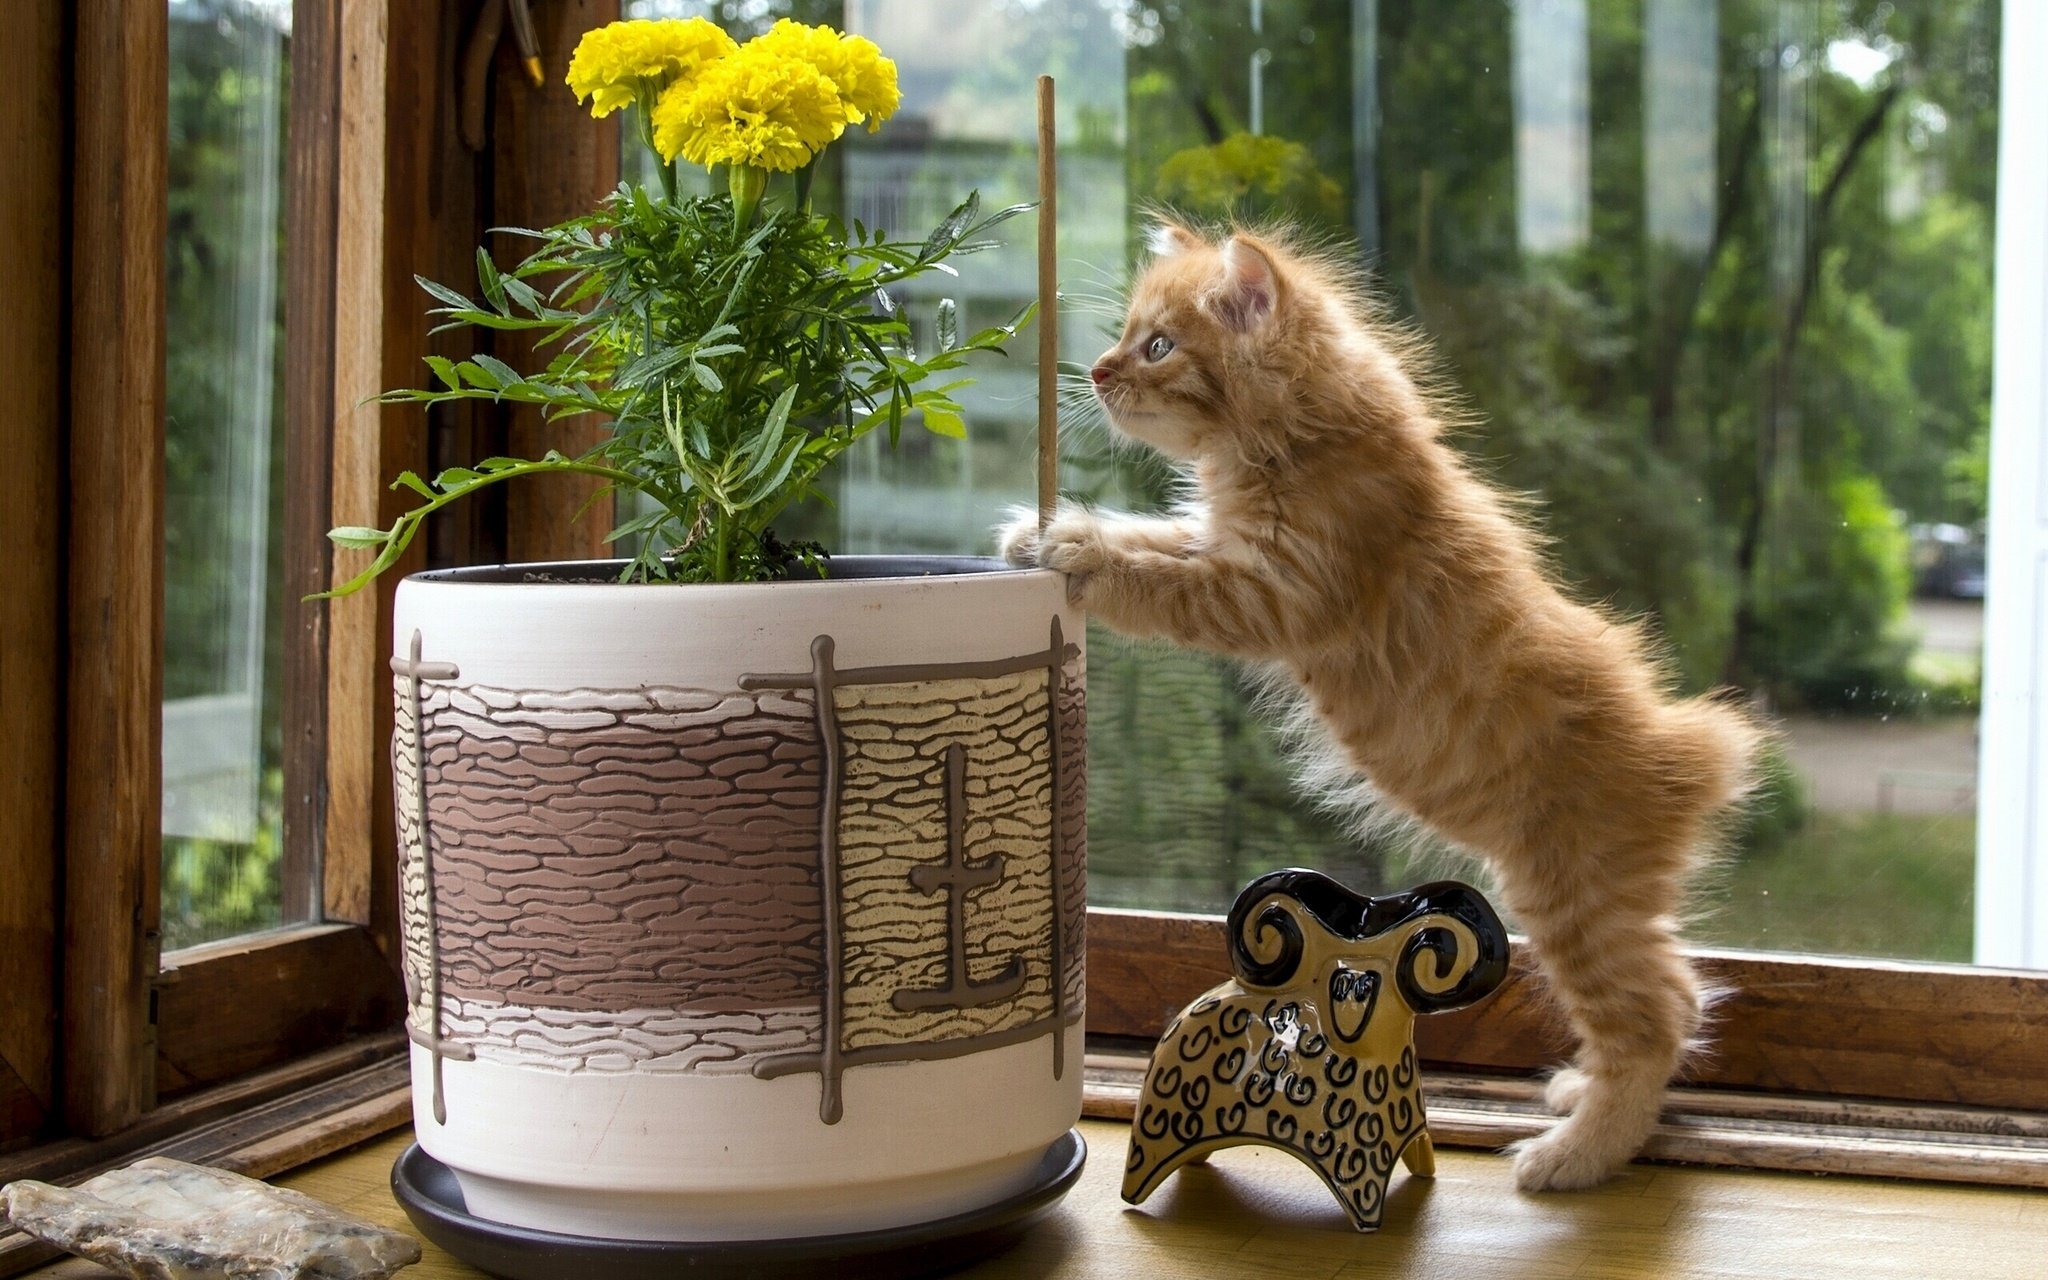 kuril, Bobtail, Kitten, Flower, Flowerpot, Curiosity, Figurine, Cat Wallpaper